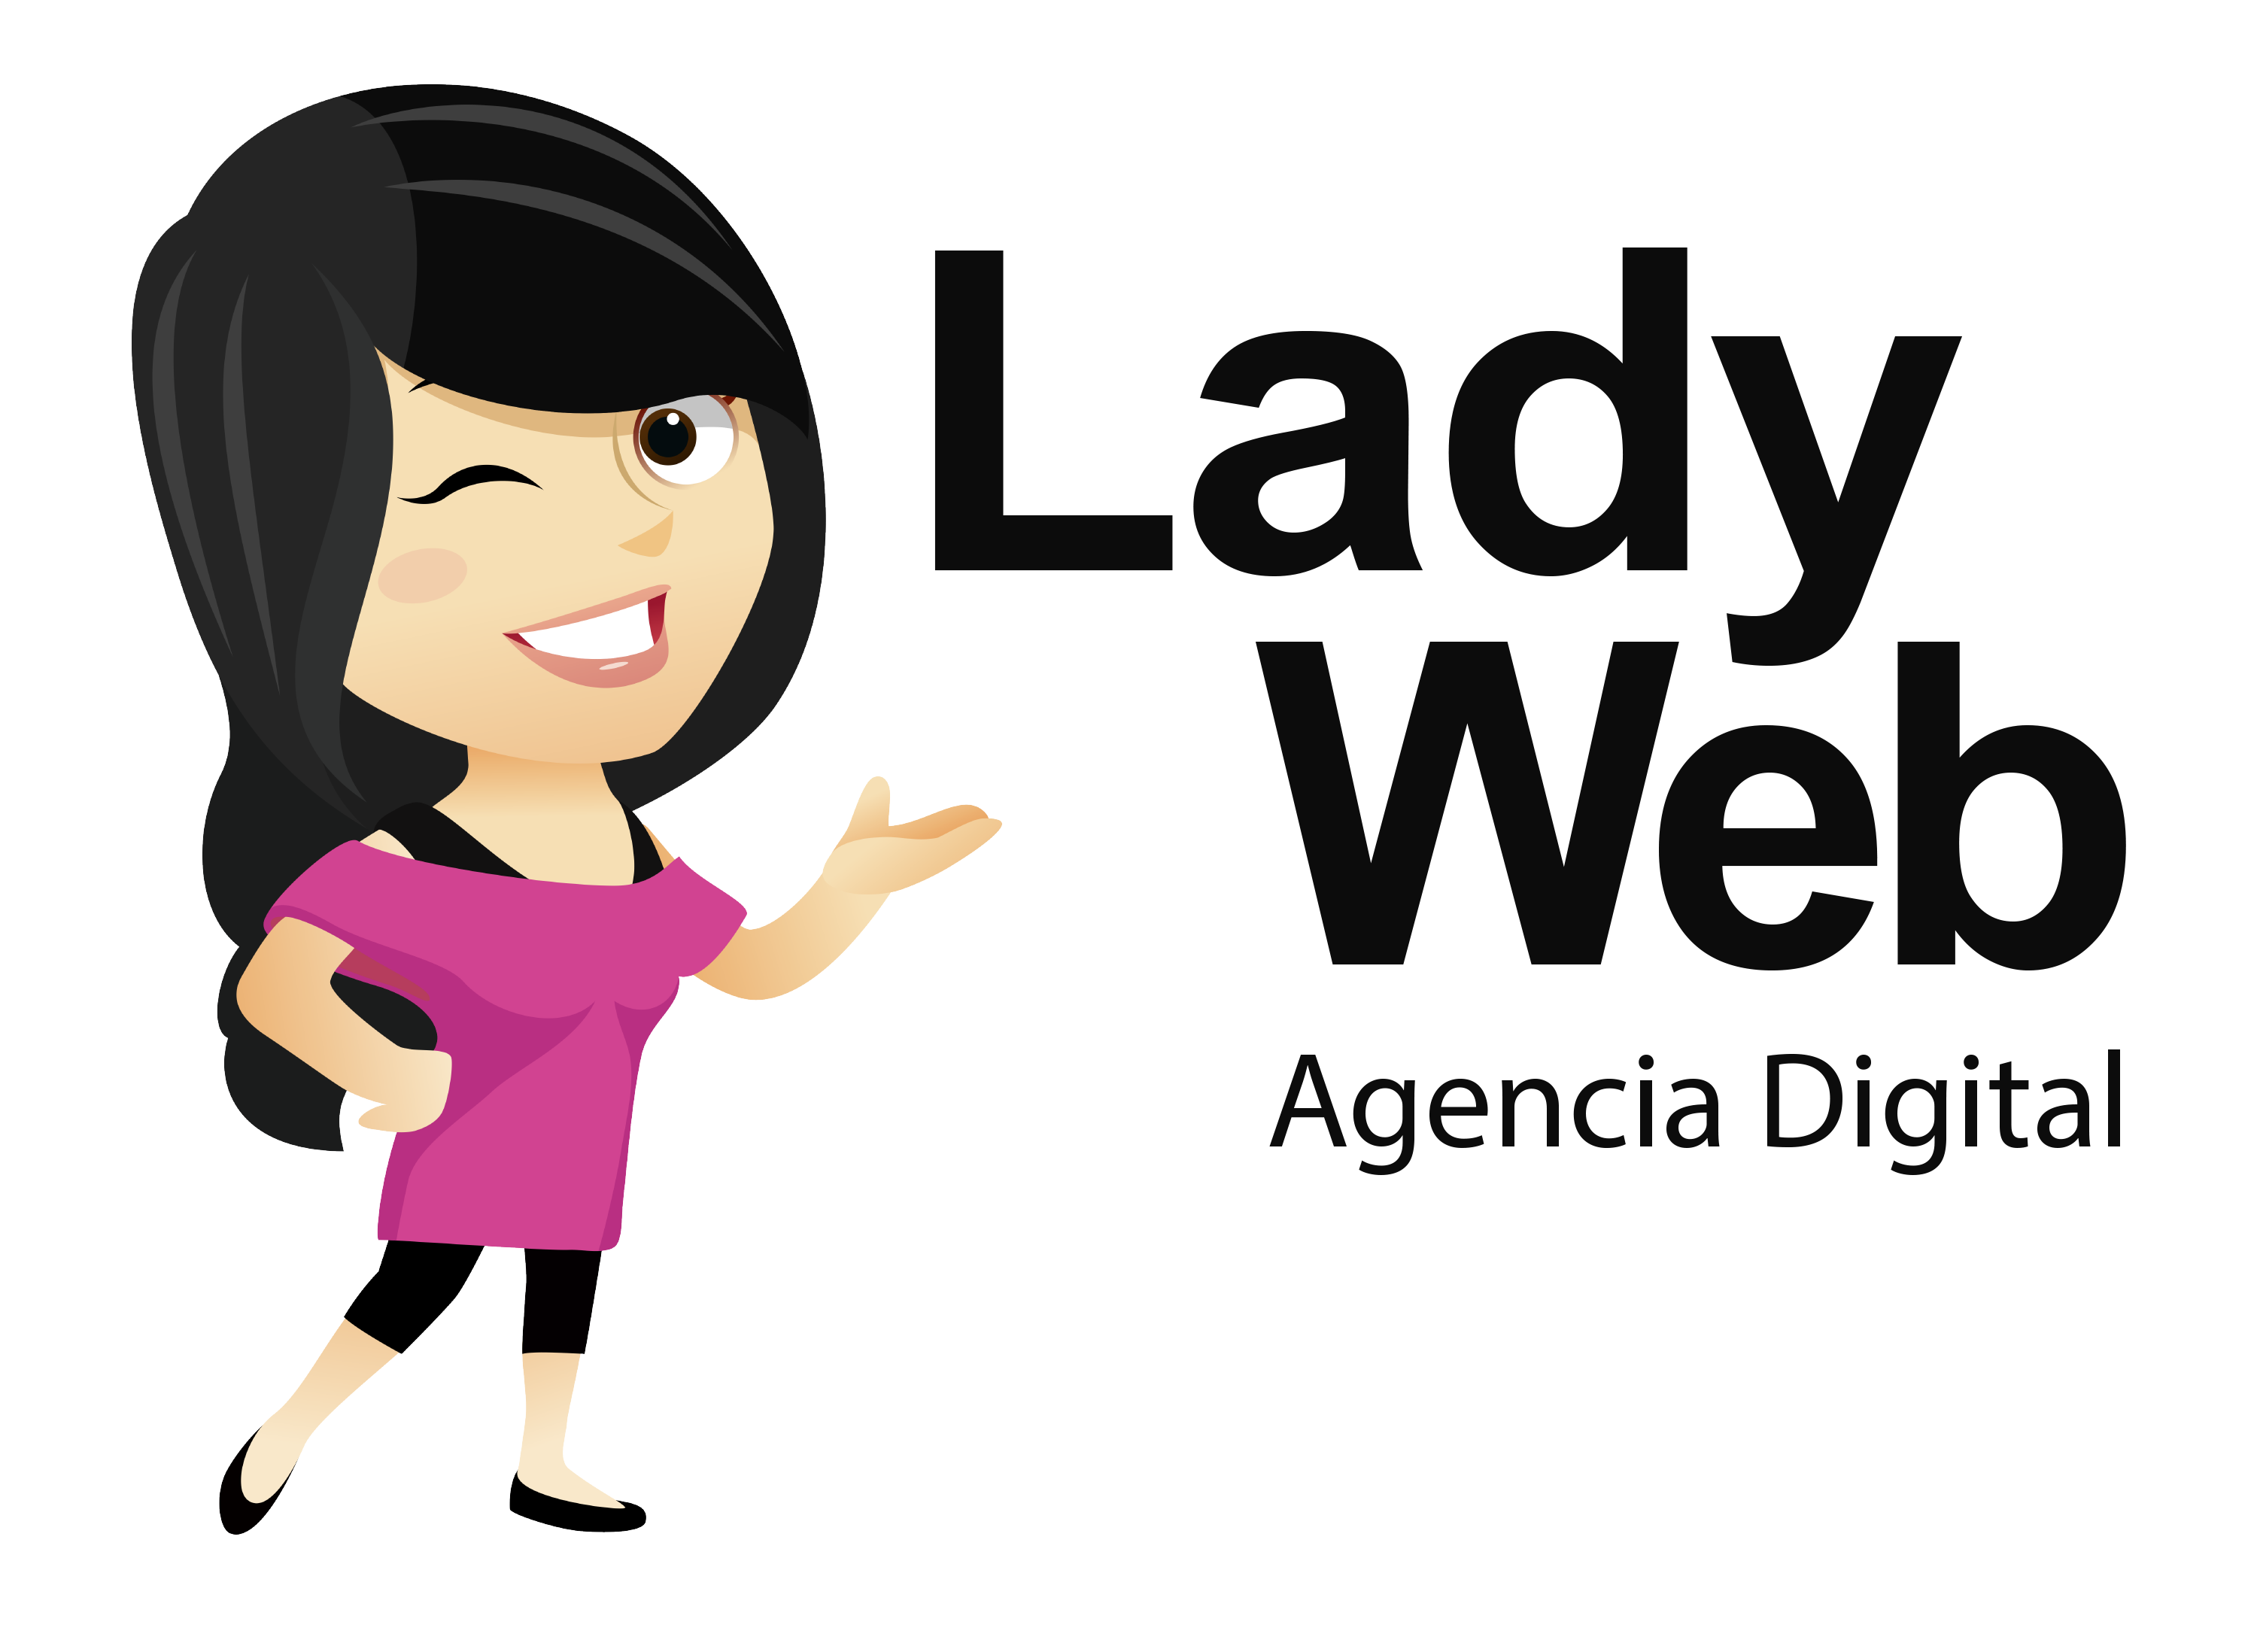 Lady Web Agencia Digital